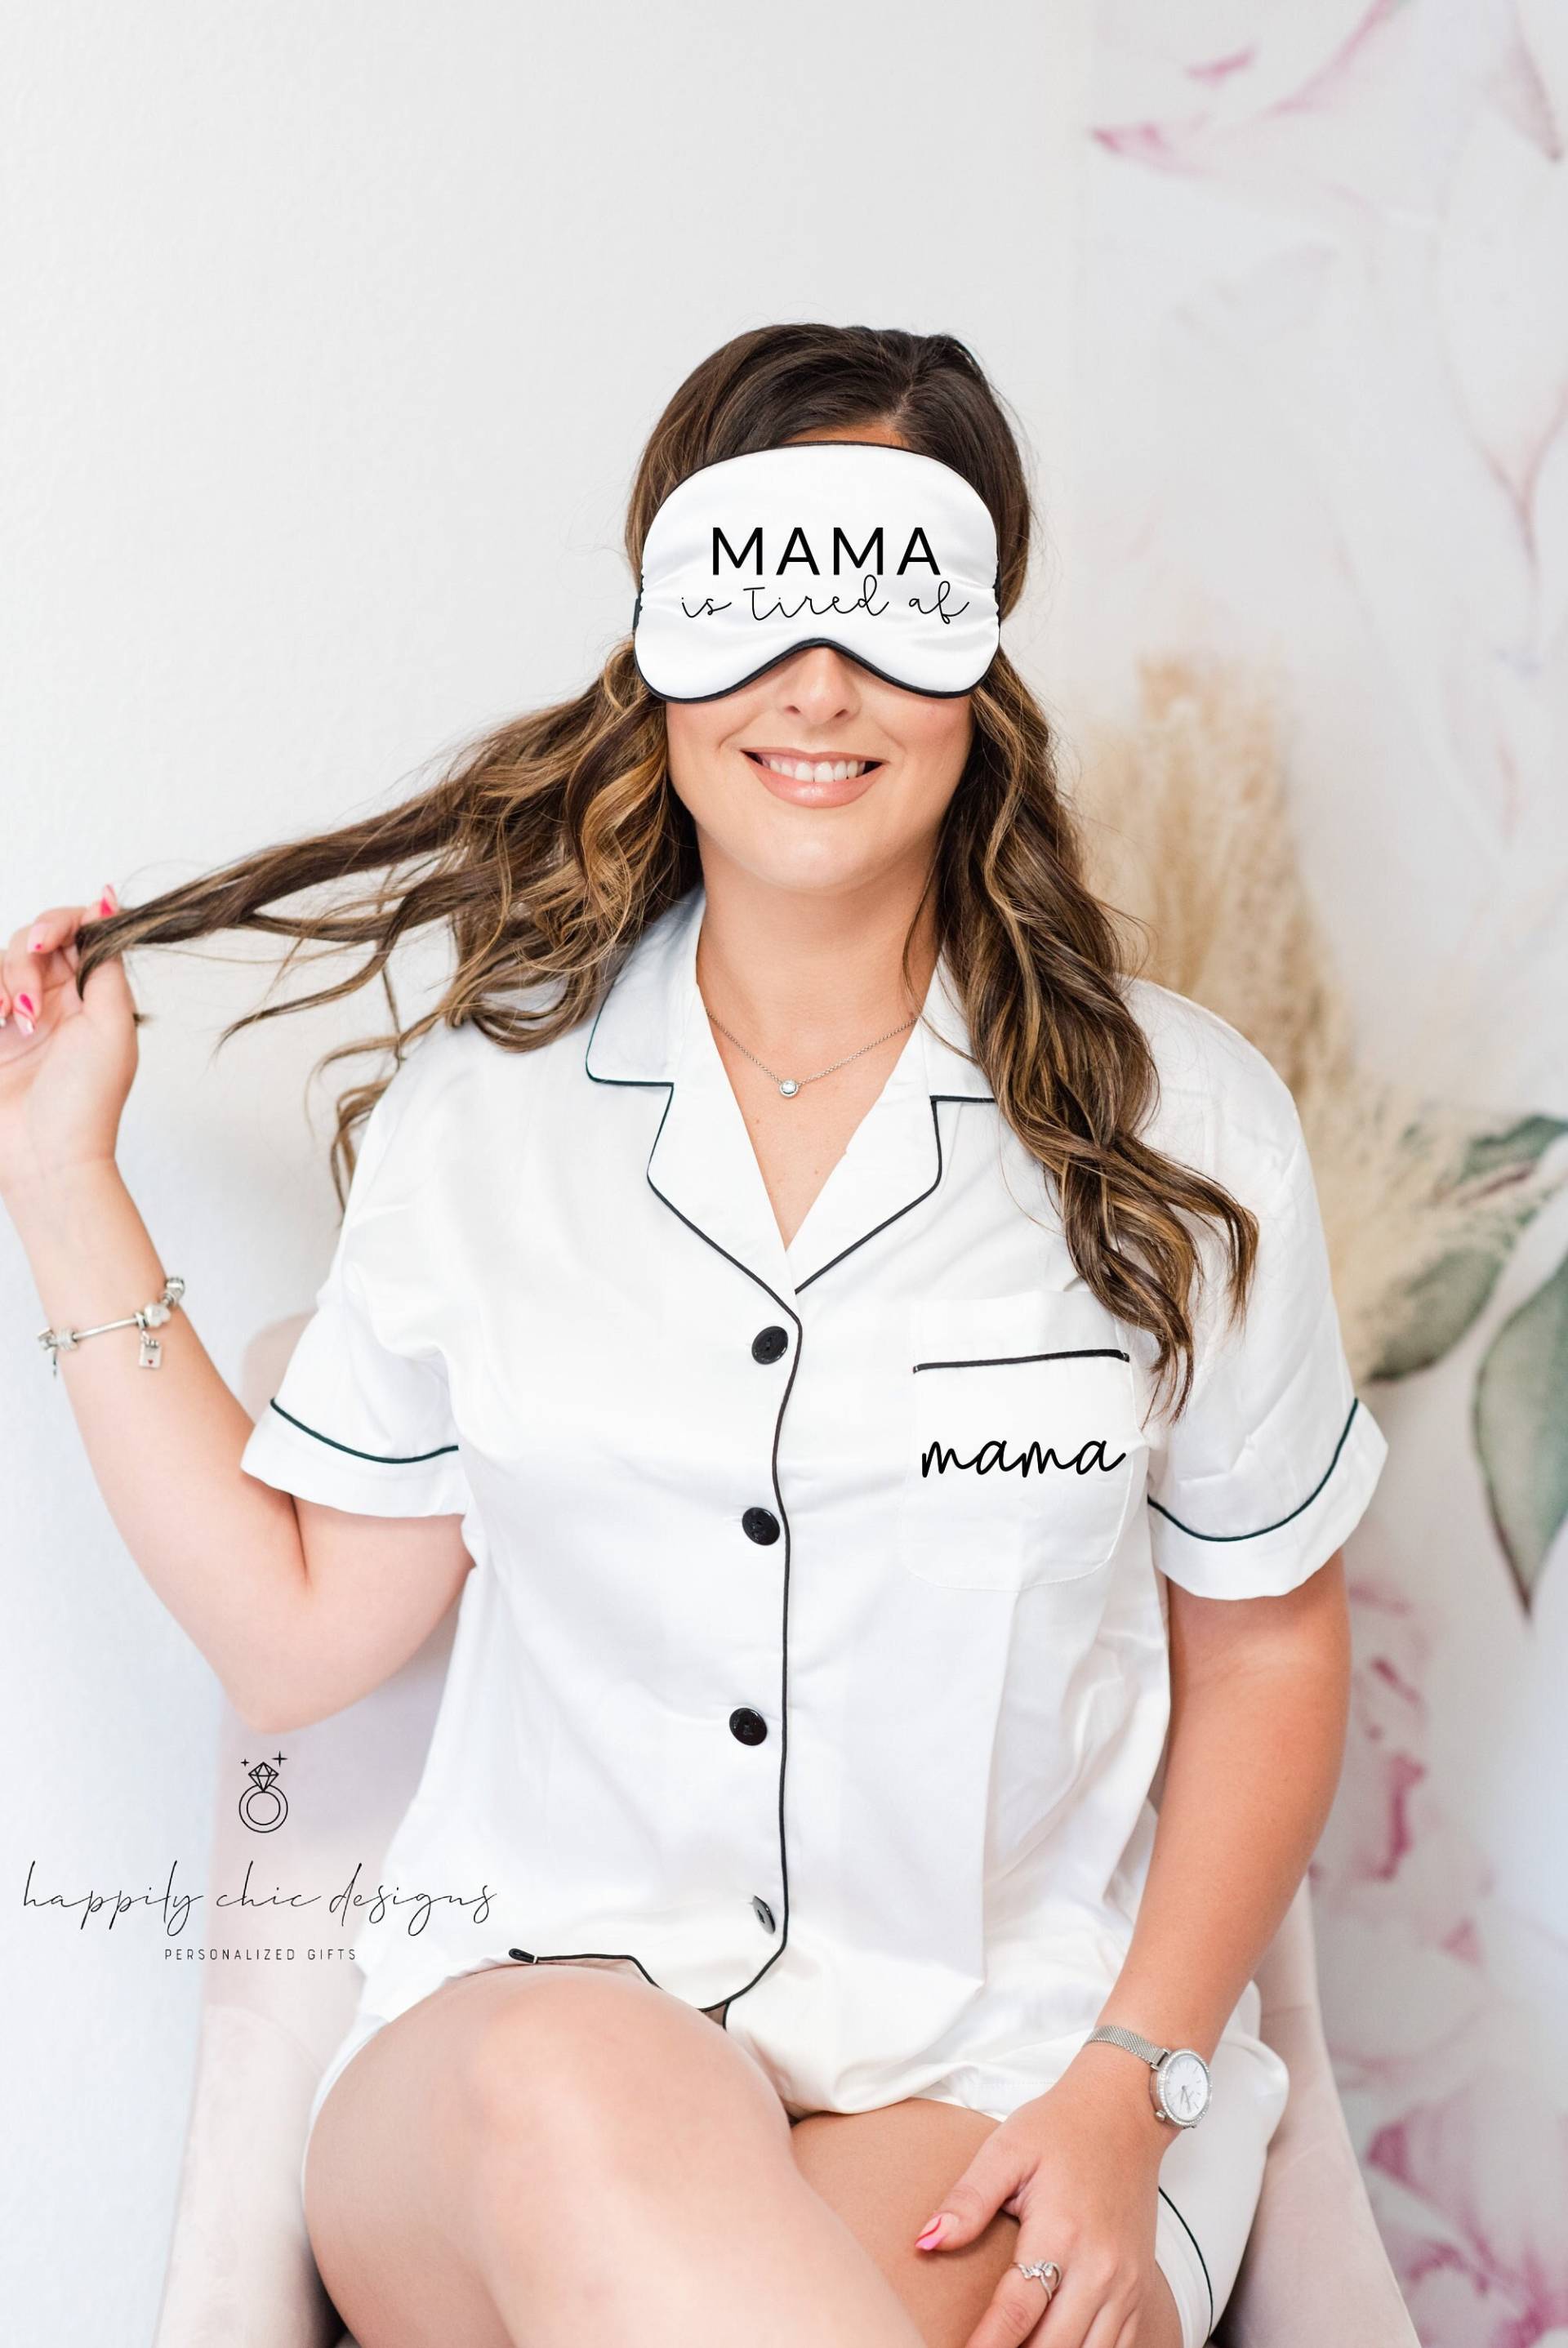 Mama Braucht Einen Nickerchenwein Schlafmaske Personalisierte Schlafmaske - Geschenke - Benutzerdefinierte Augenmaske Neue Geschenk - Eltern von HappilyChicDesigns